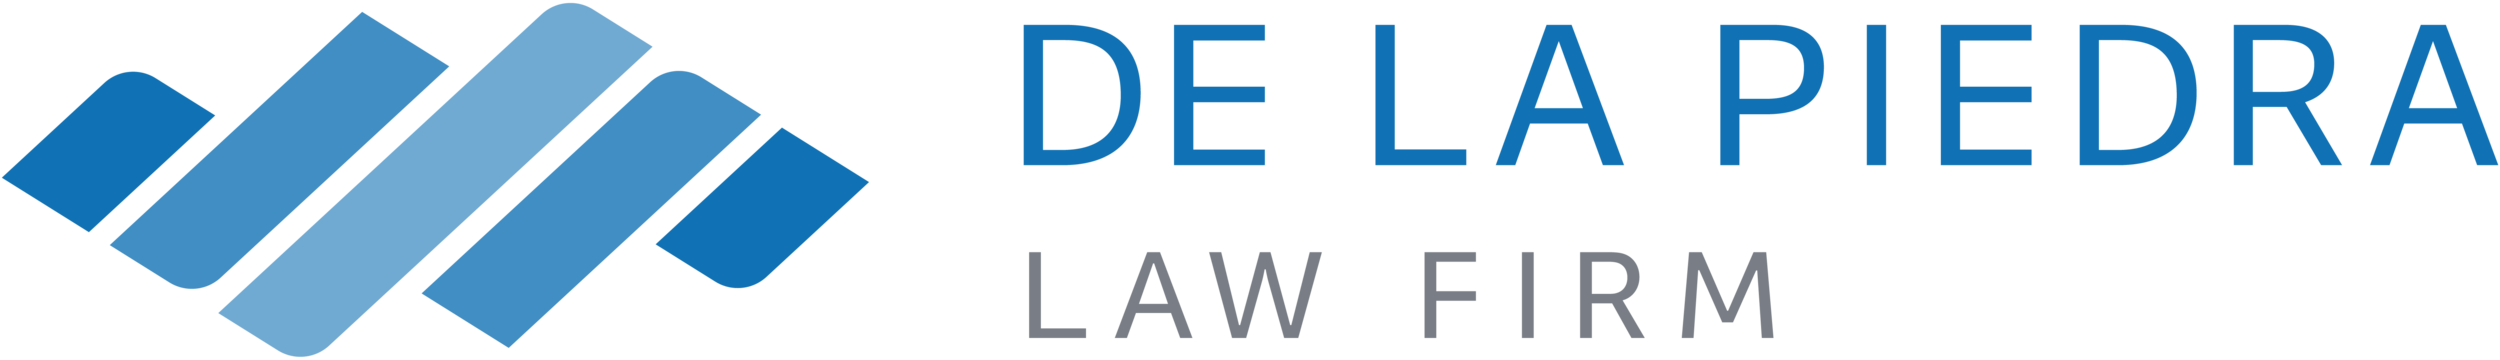 De La Piedra Law Firm